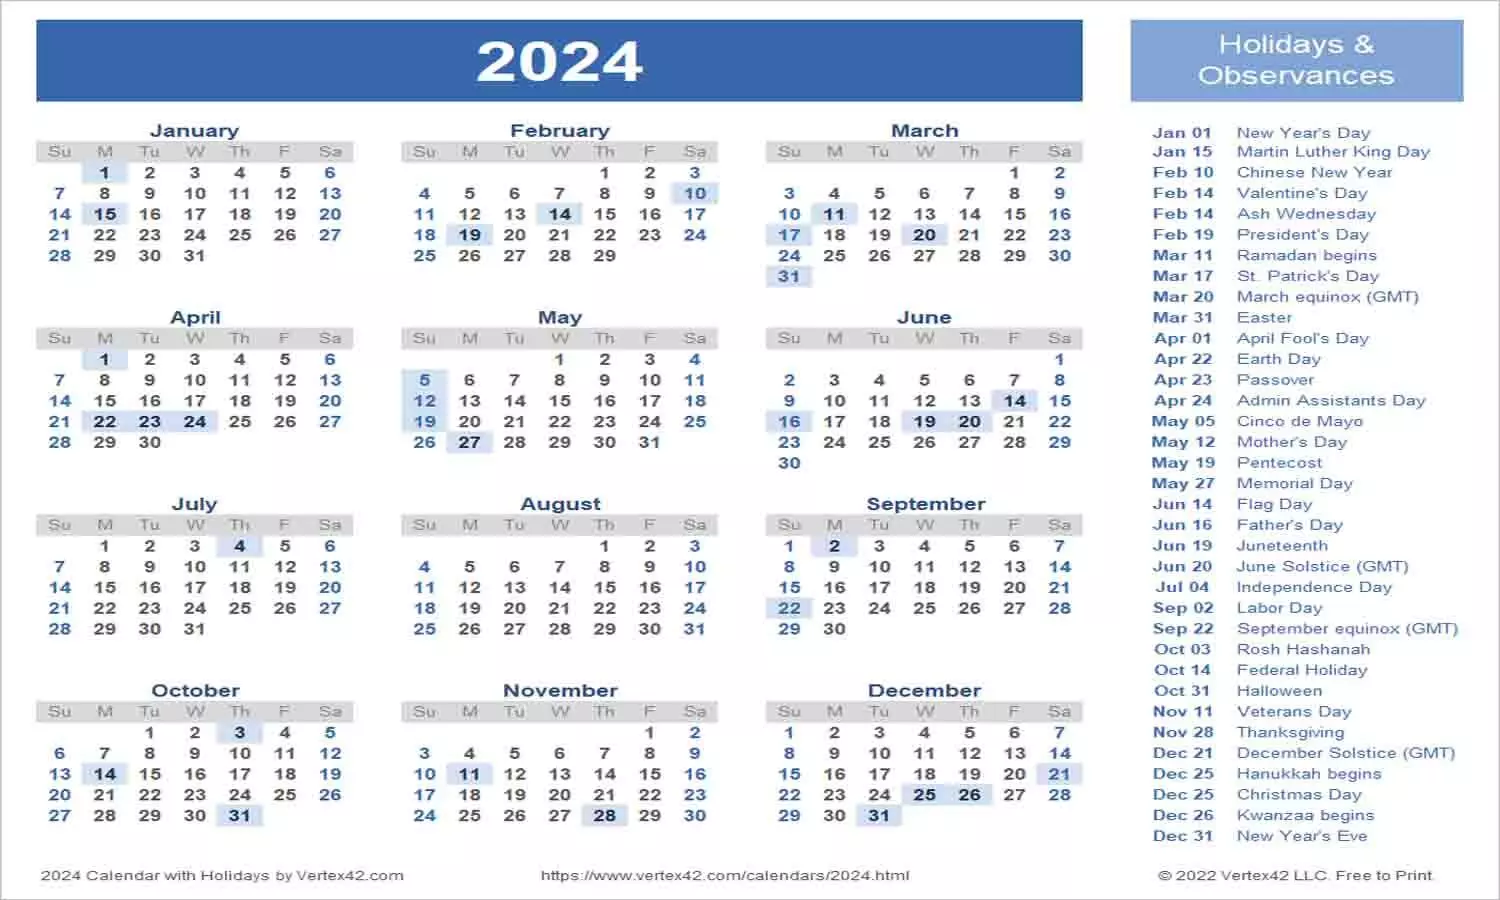 2024 Calendar Holiday List